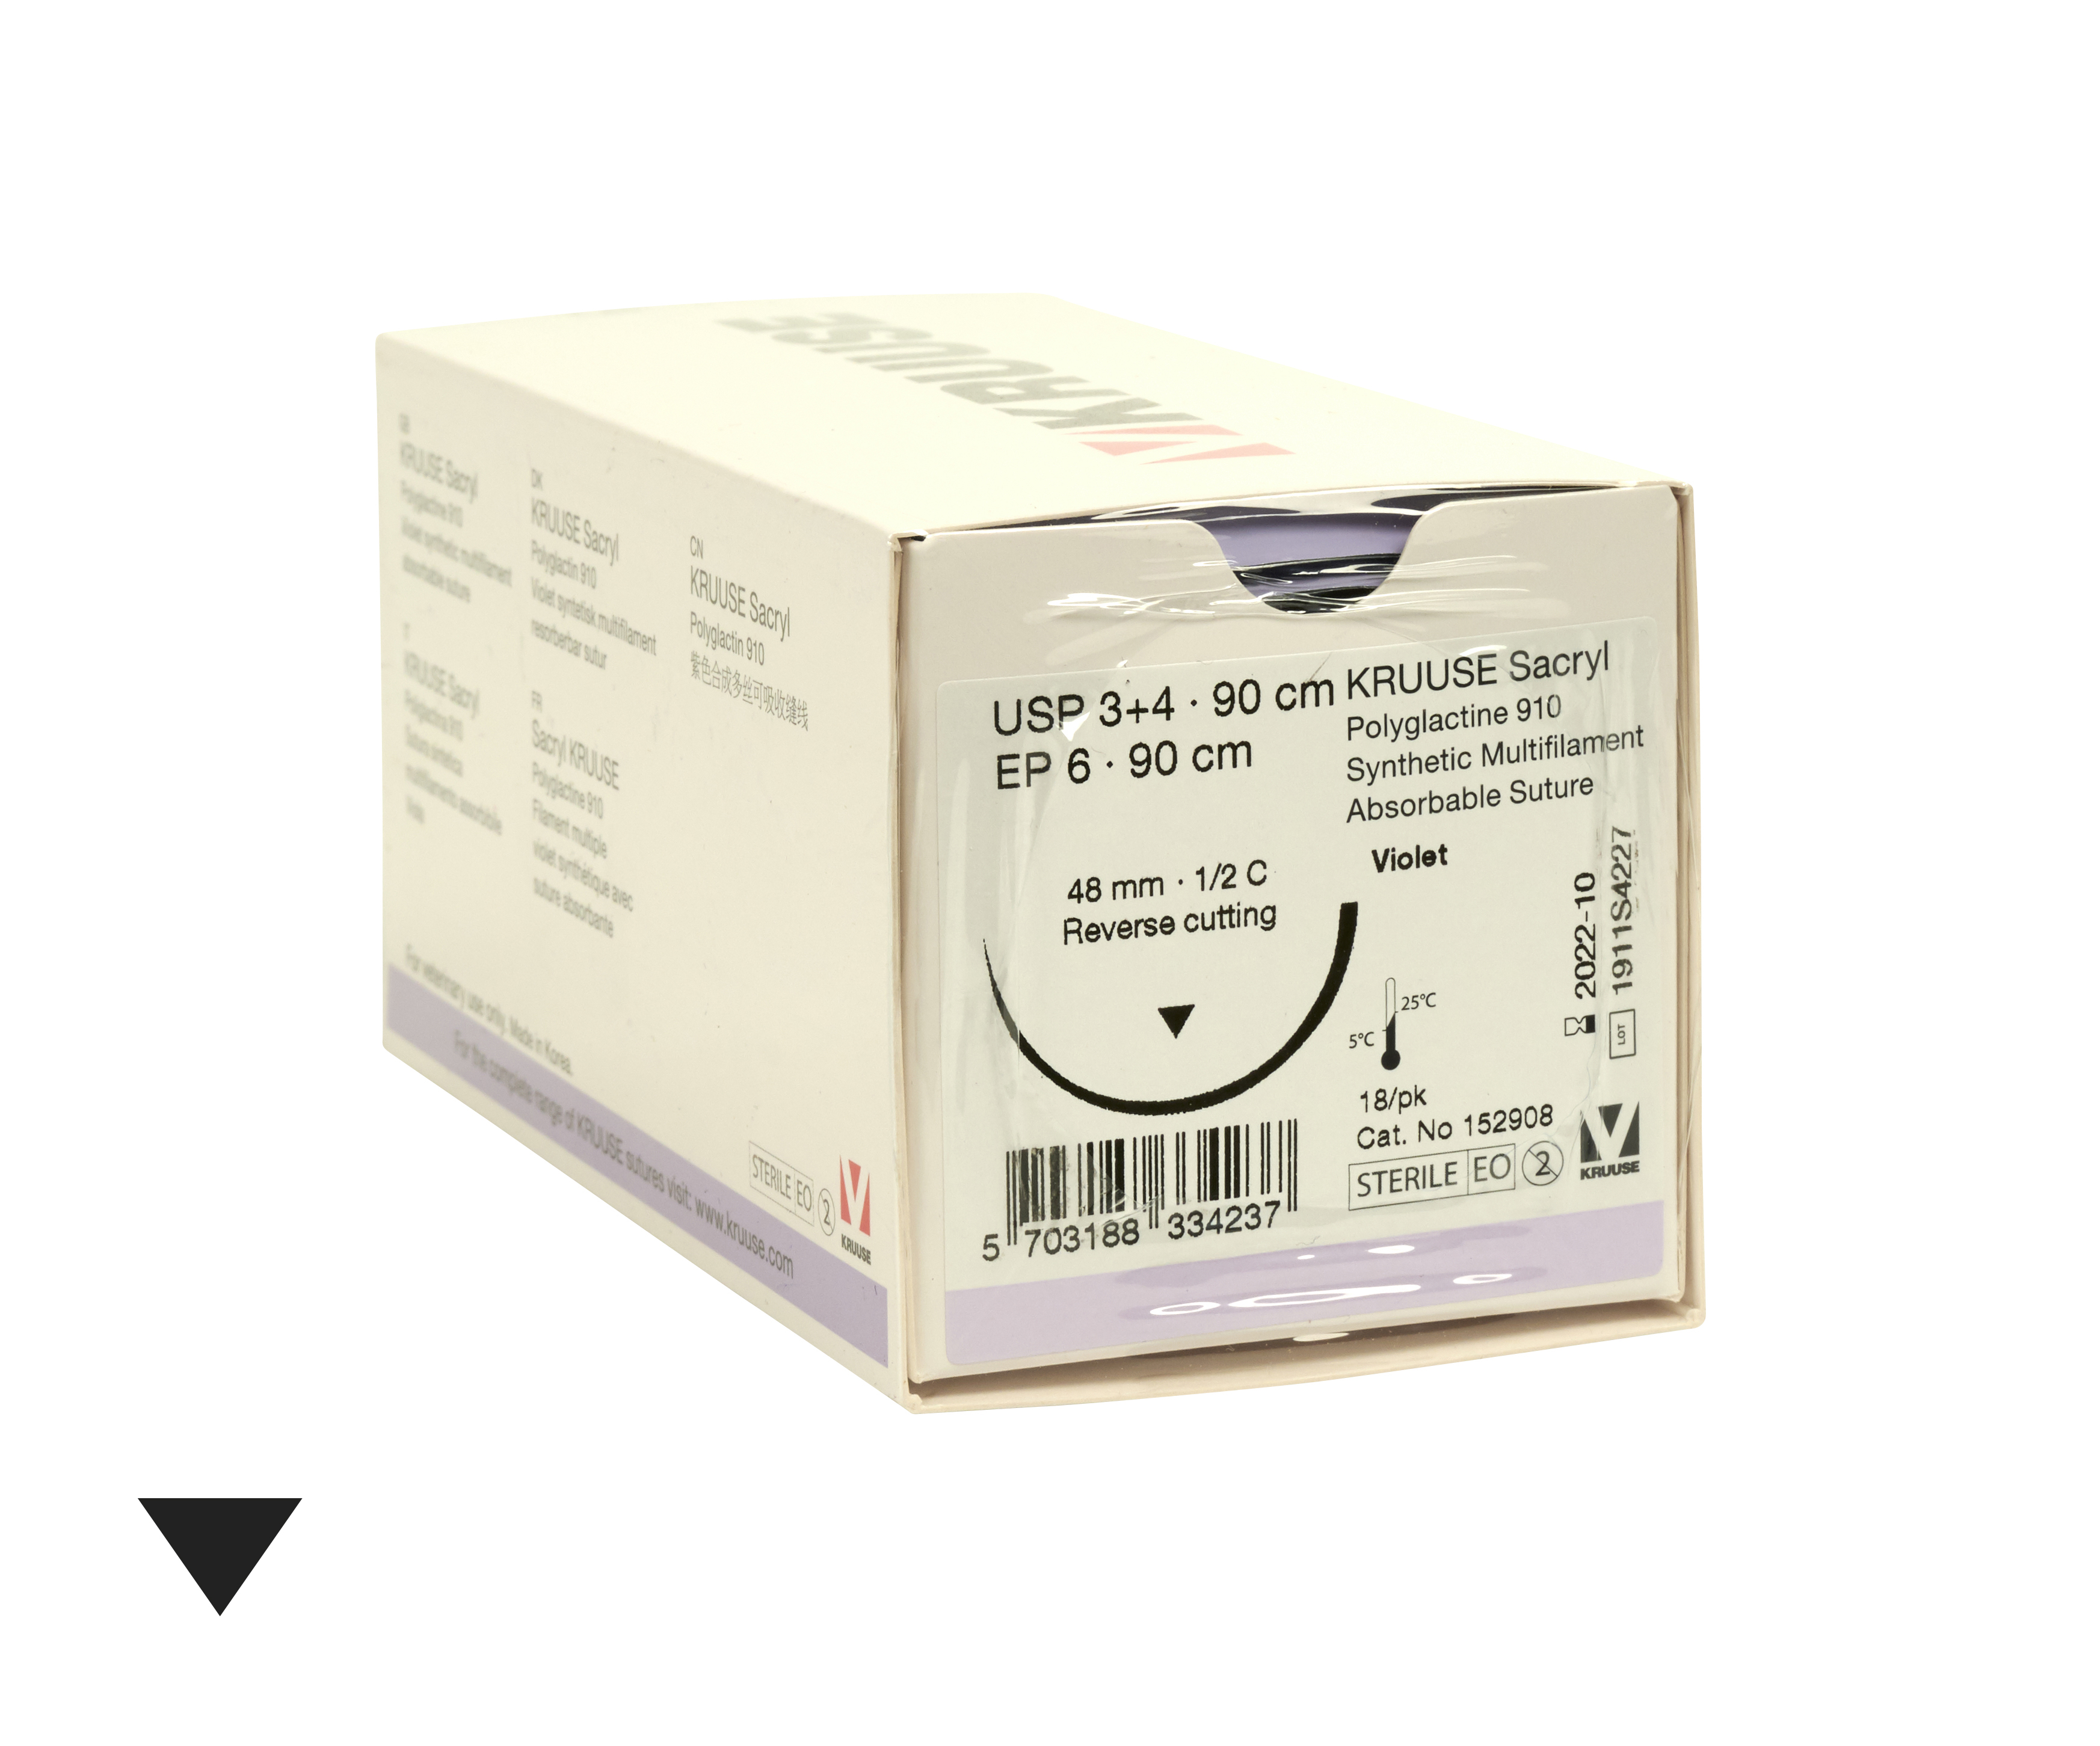 KRUUSE Sacryl suture, USP 3+4/EP 6, 90 cm. Needle: 48 mm, ½C RC, 18/pk